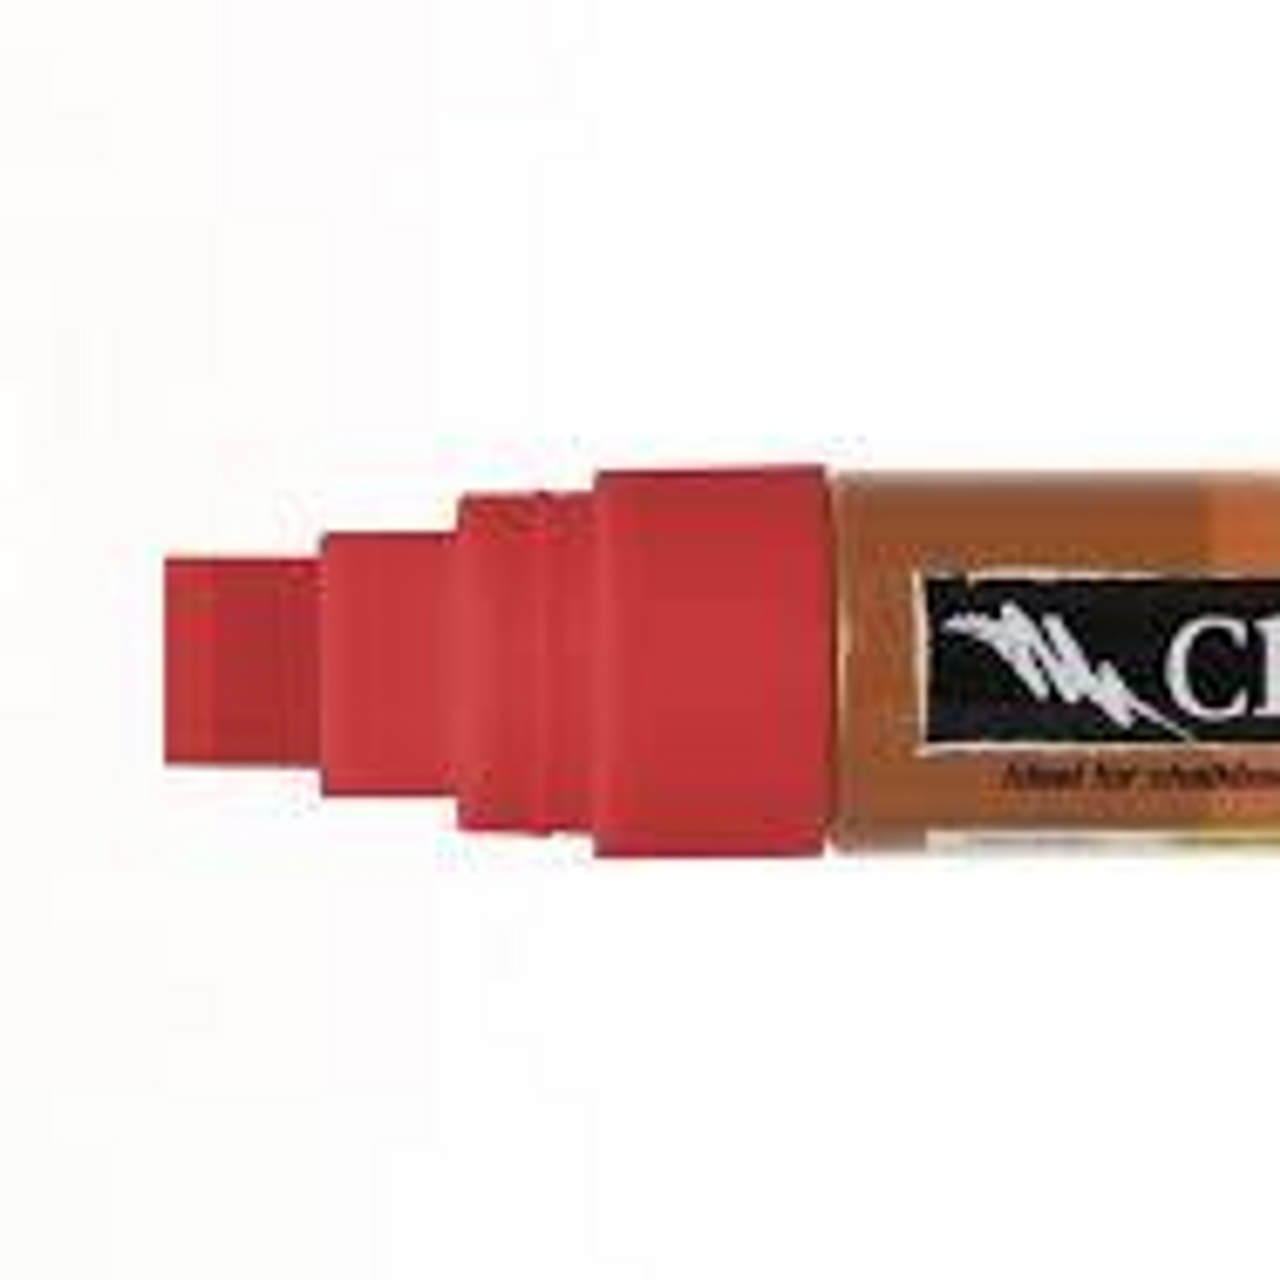 McClard's Gifts: Clown Nose Red Chalk 1 6mm chalk pen